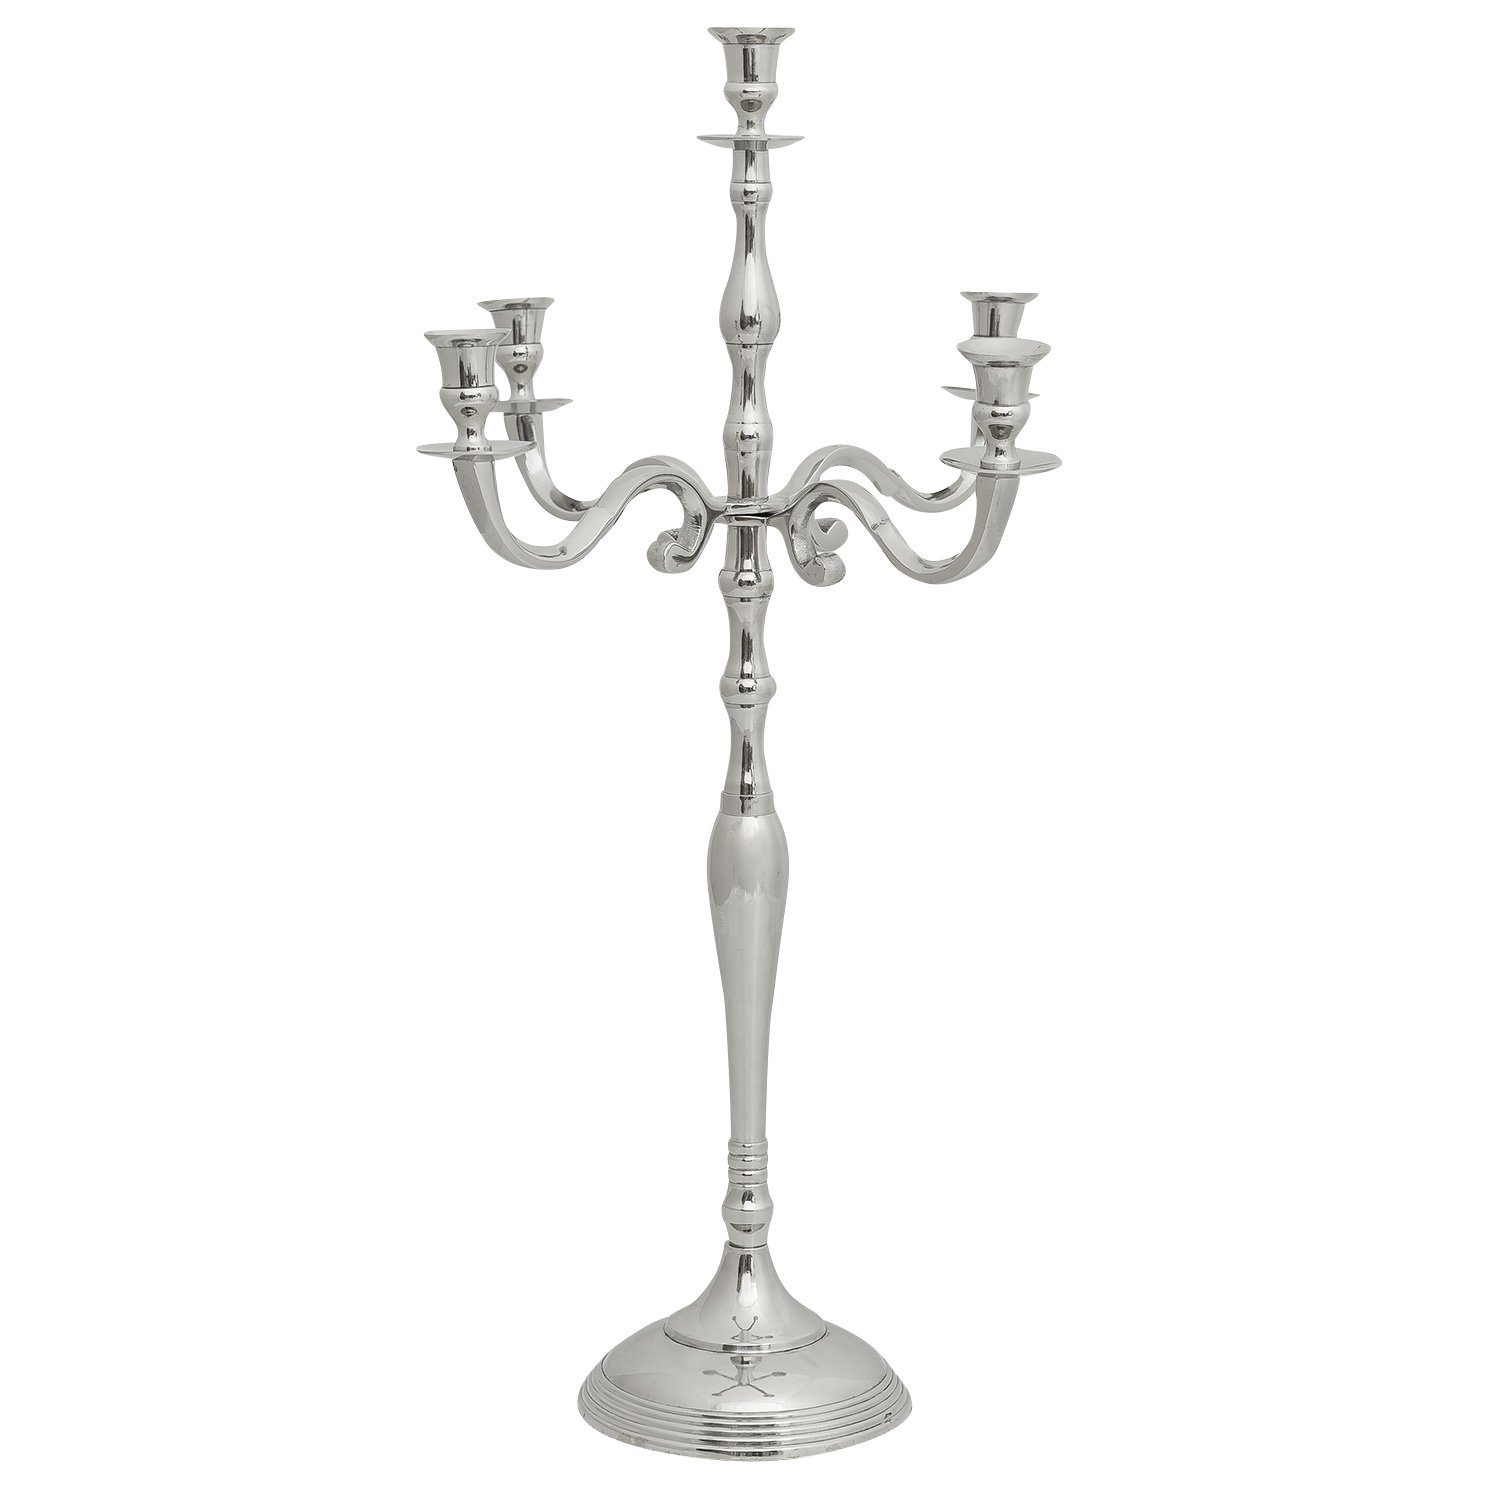 Antik-Stil Aubaho Kerzenständer Kerzenständer Kerzenhalter 5-armig silber 78cm Aluminium